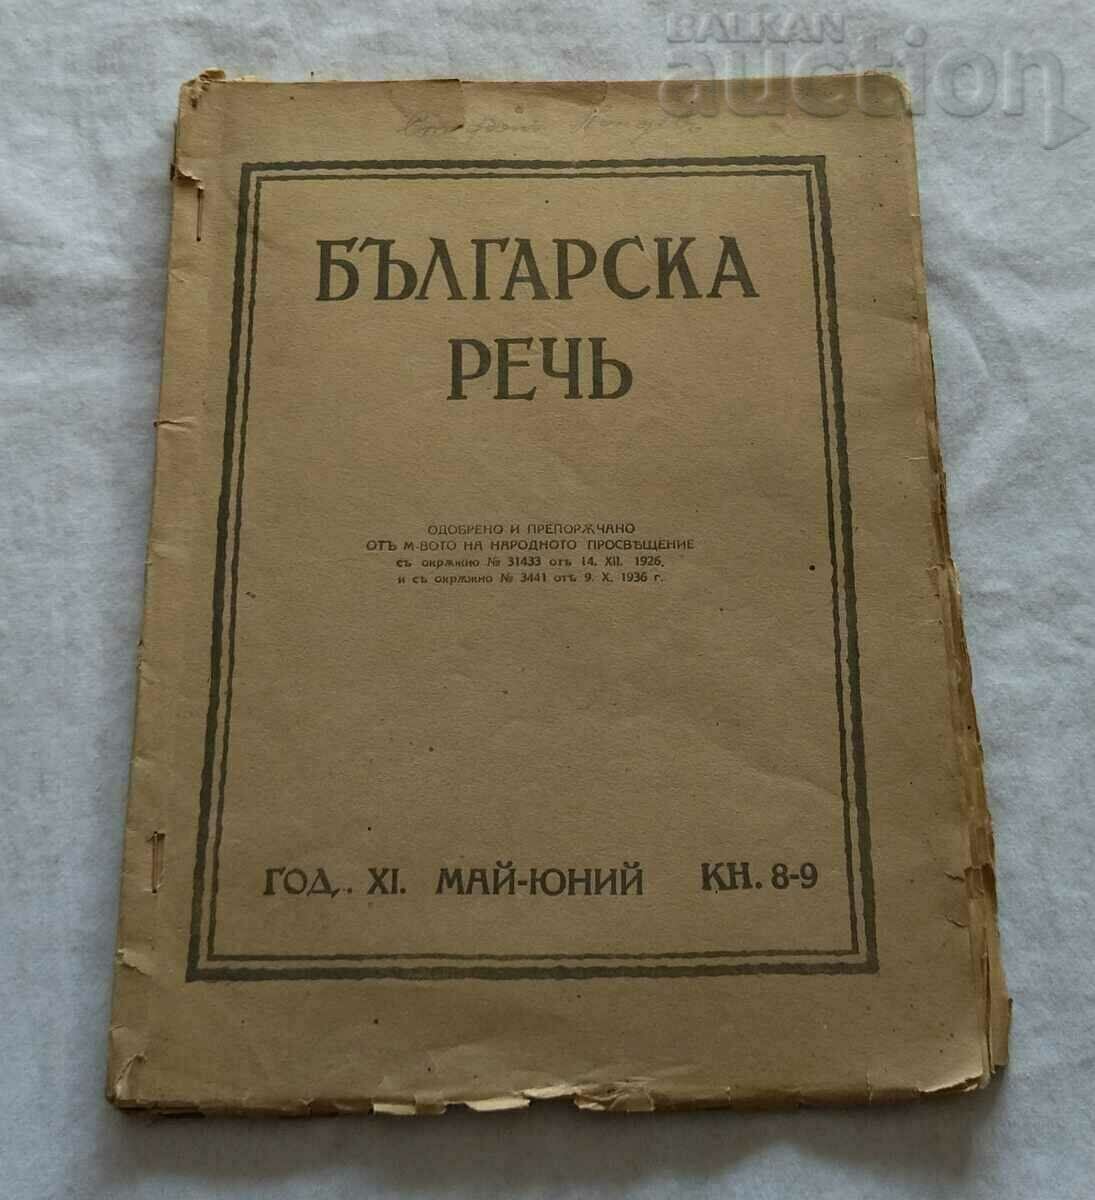 СПИСАНИЕ "БЪЛГАРСКА РЕЧ" КН. 8-9 1937 г.